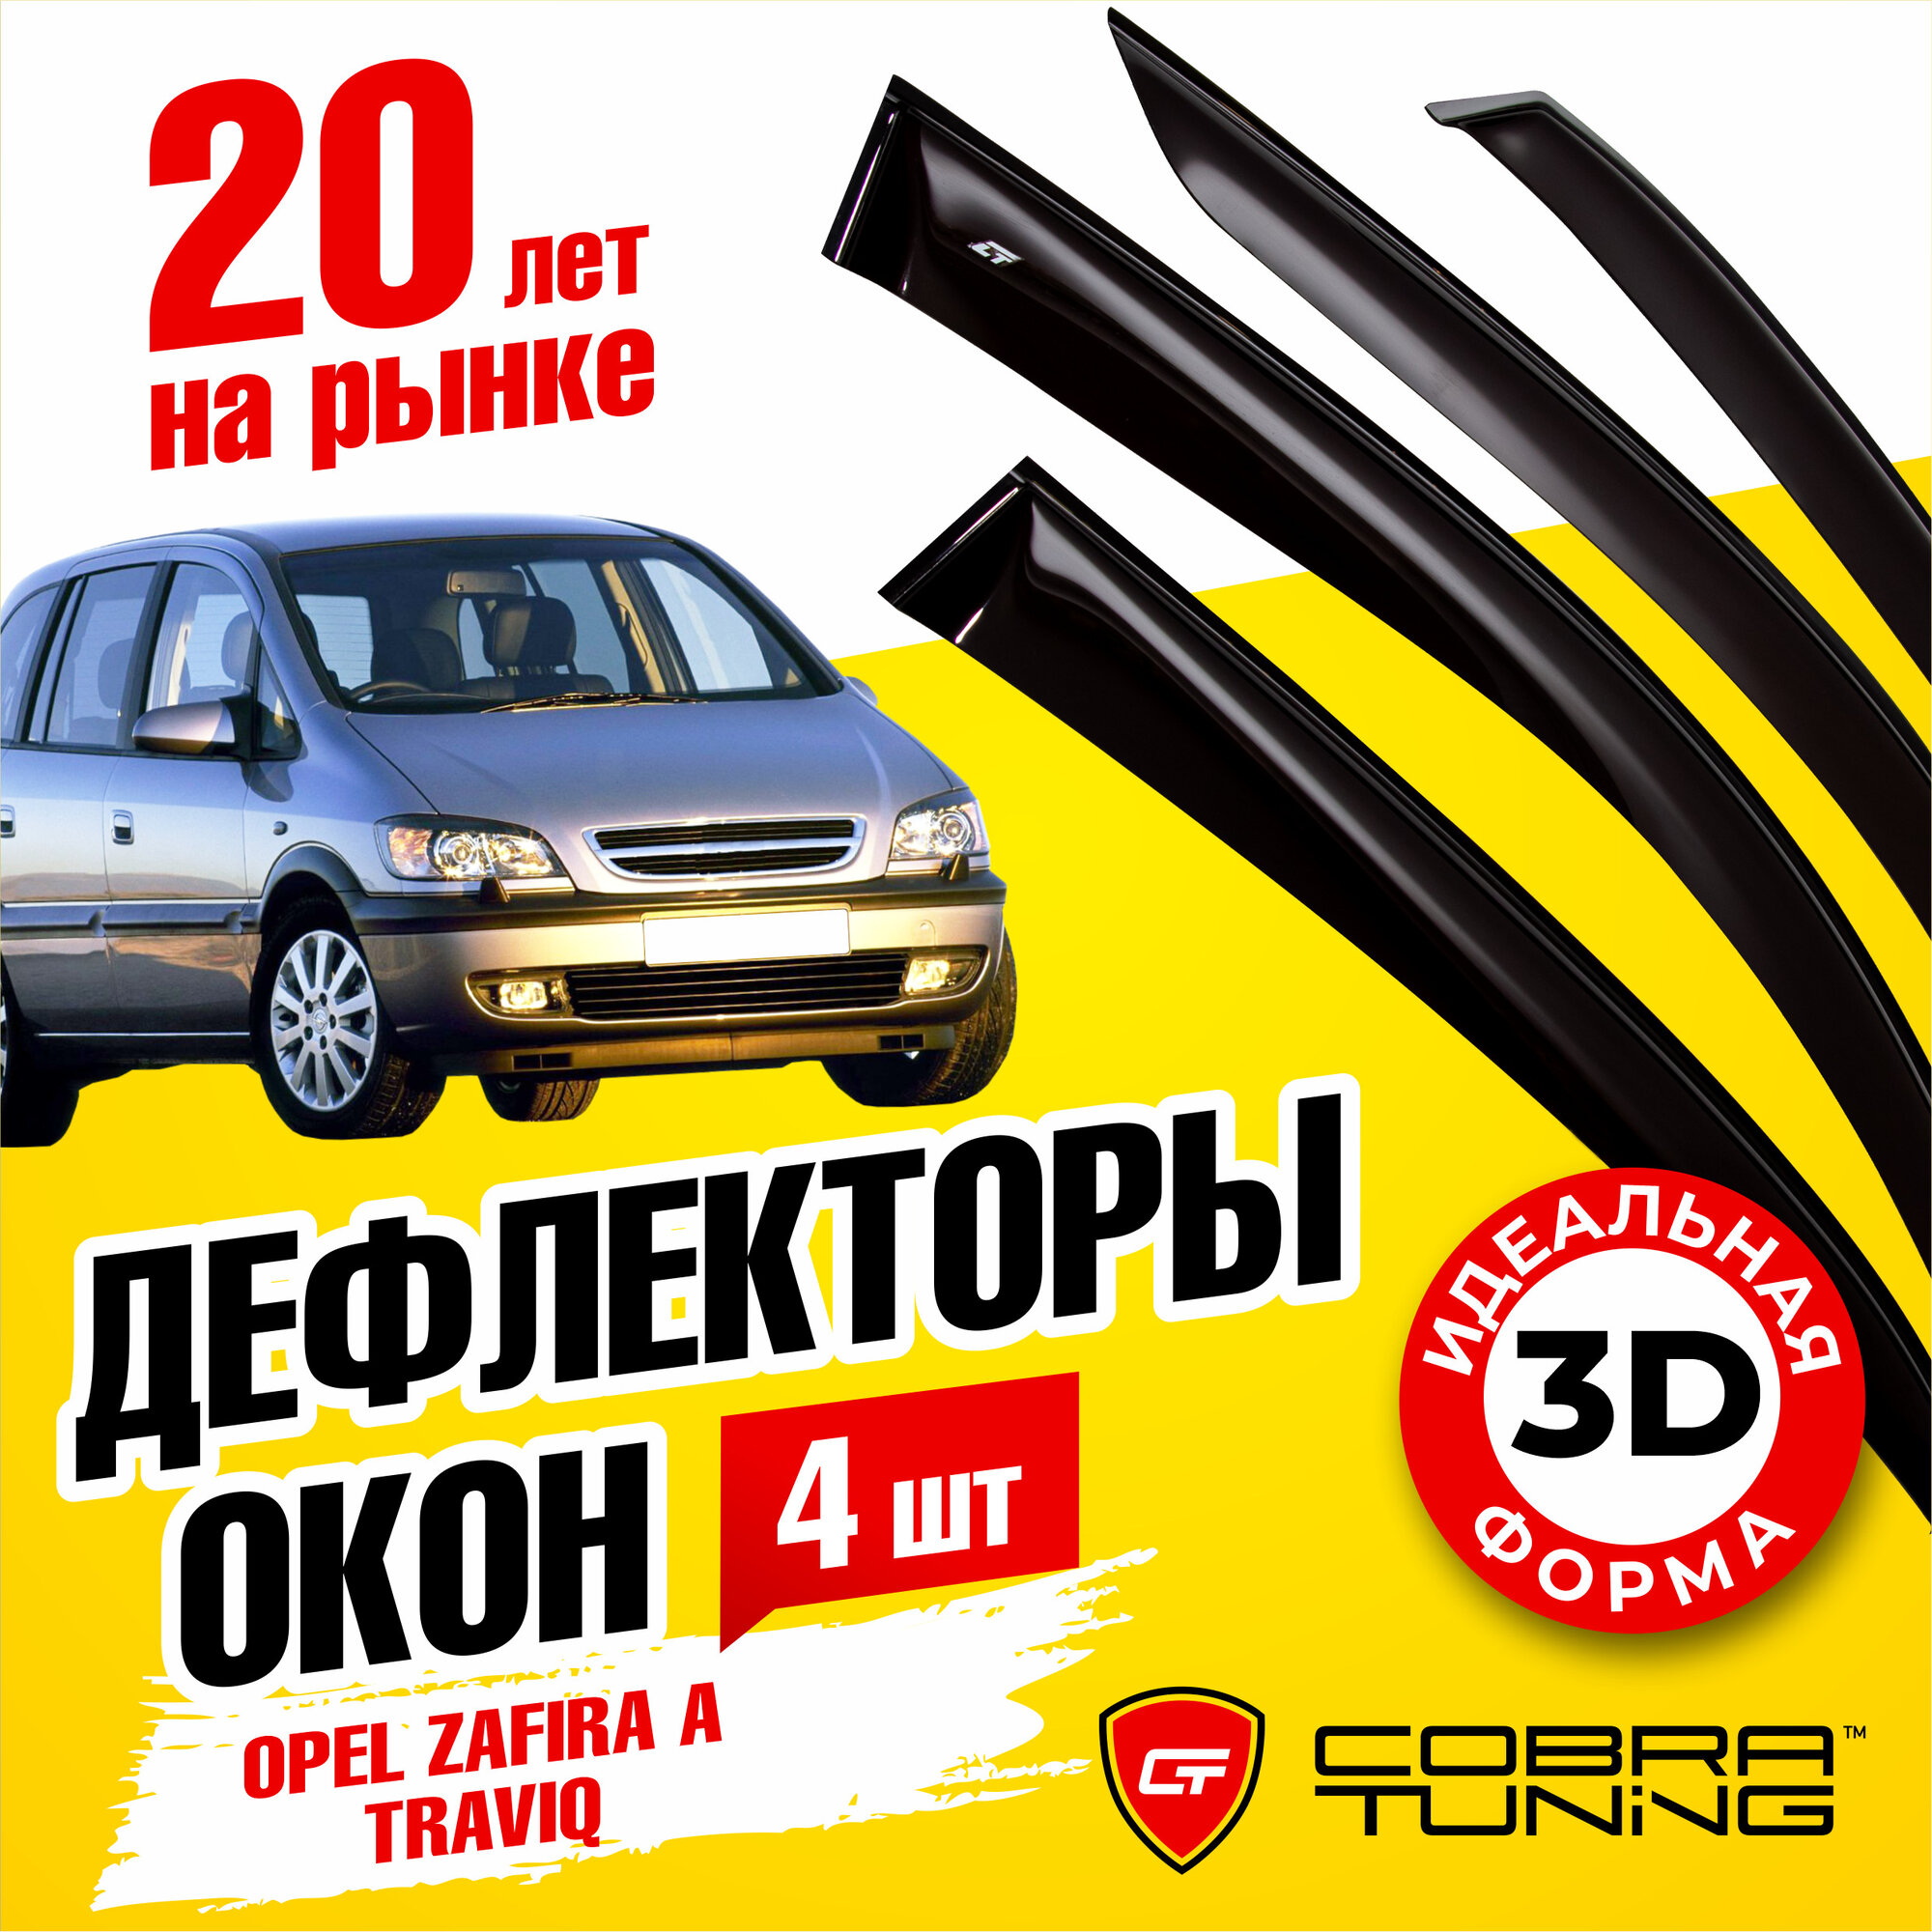 Дефлектор окон Cobra Tuning Дефлекторы окон Cobra Tuning для OPEL ZAFIRA A 1999-2006 ветровики на окна накладные O11400 для Opel Zafira Subaru Traviq